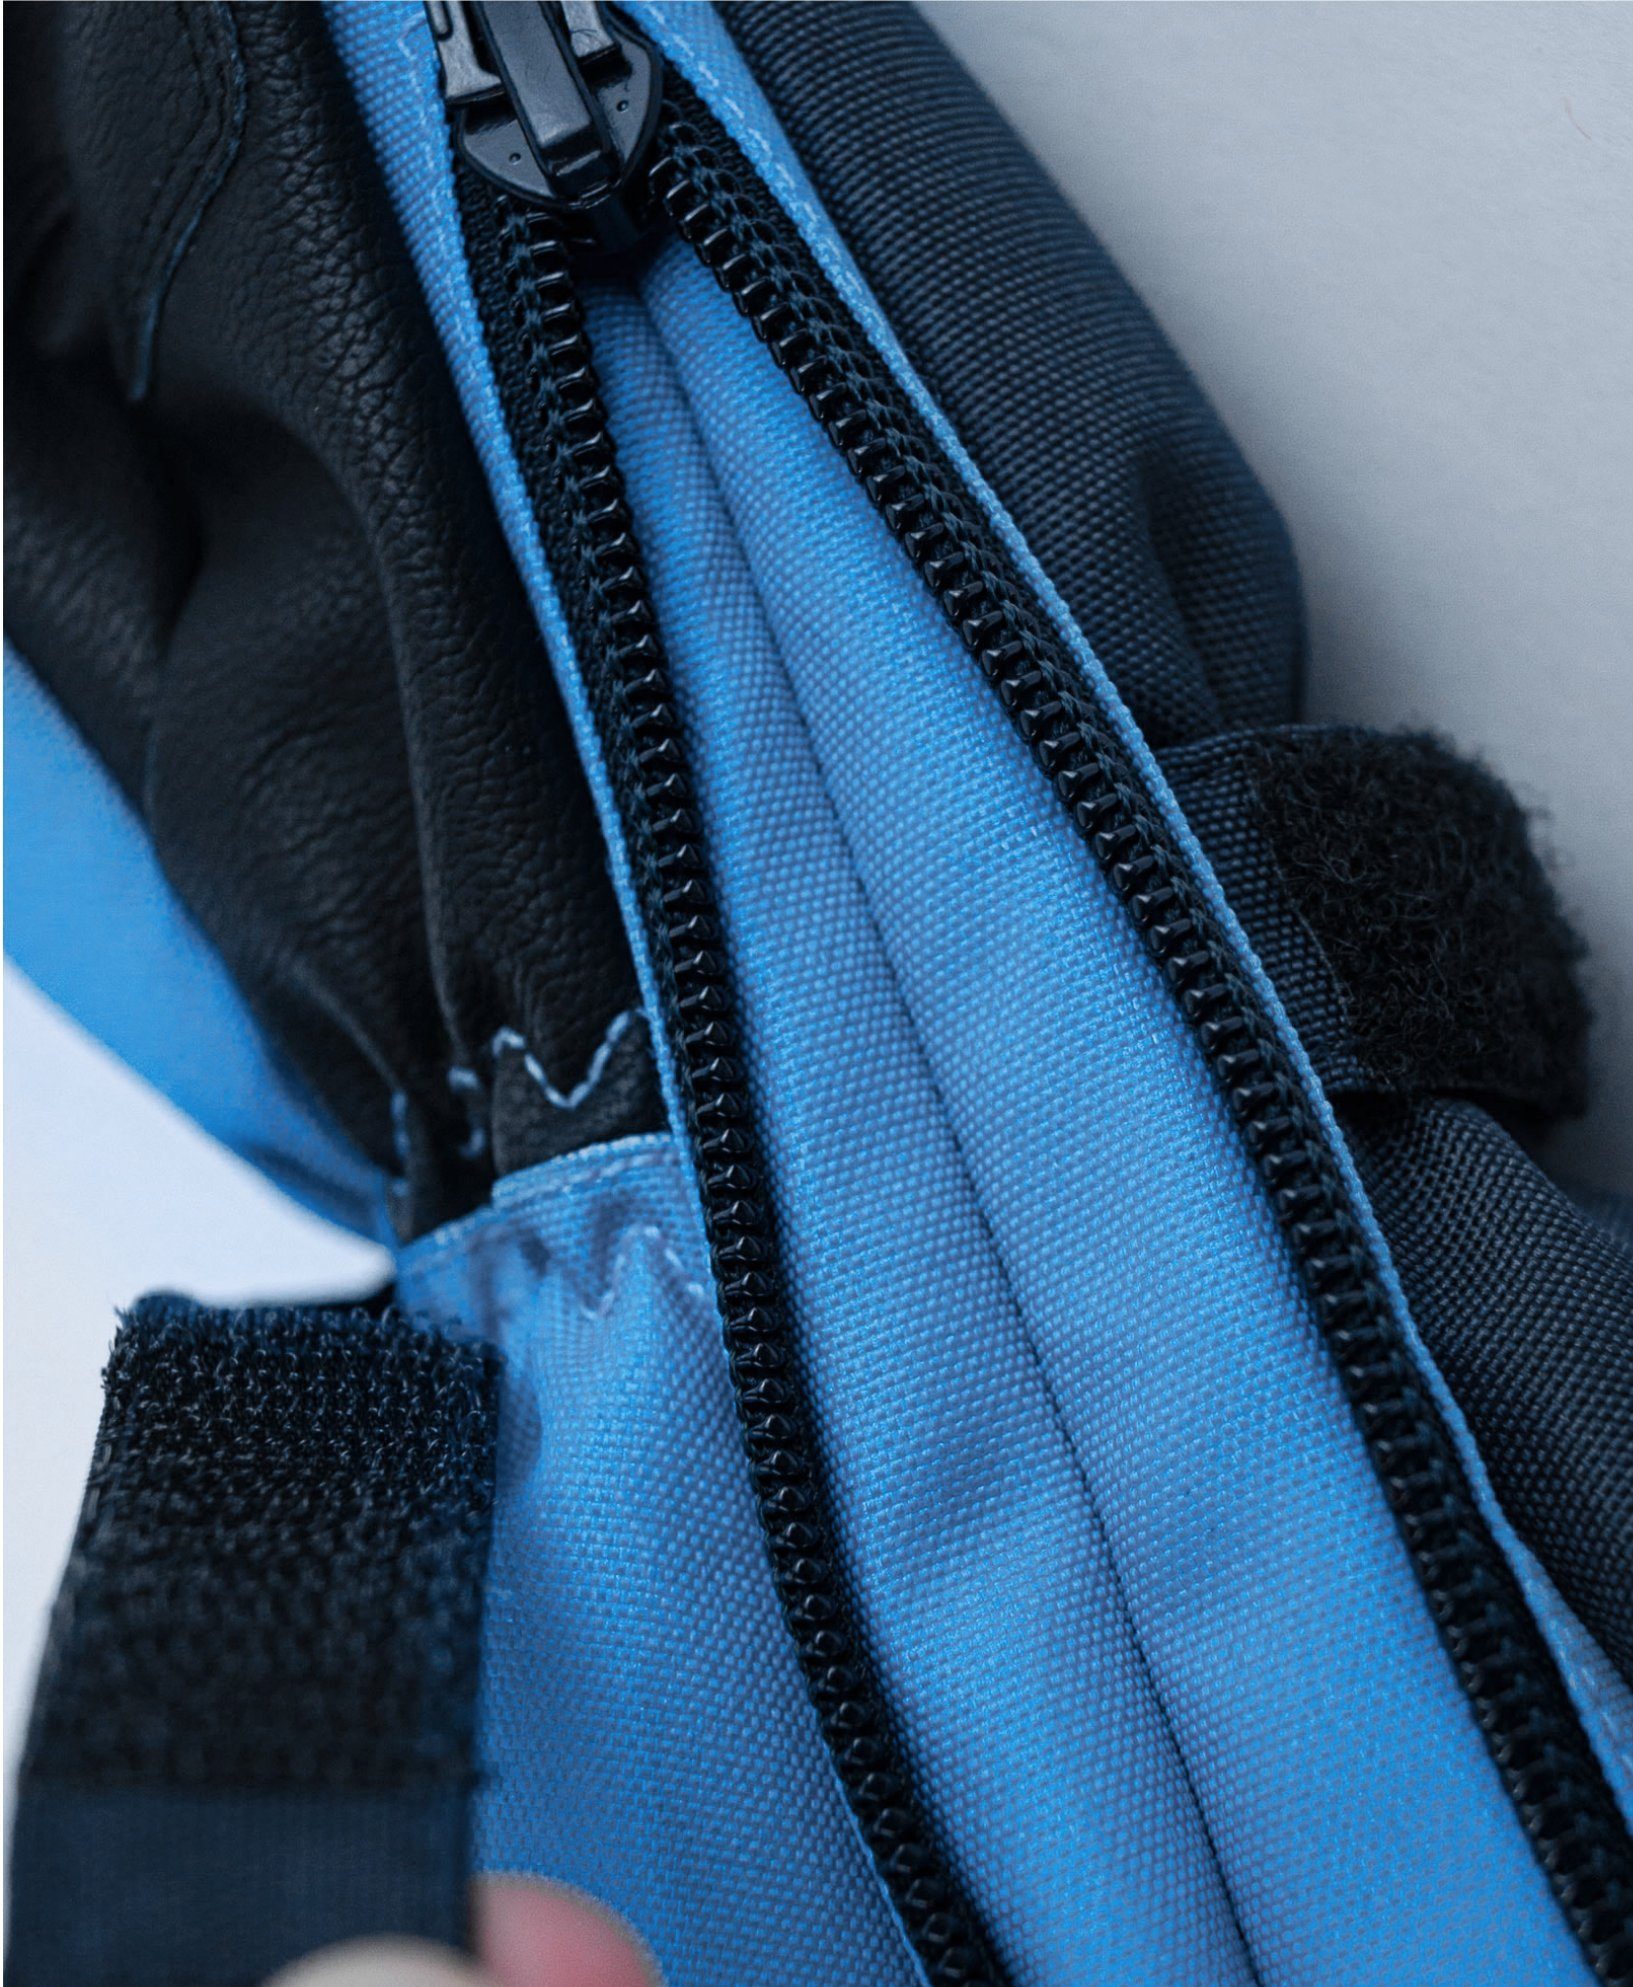 Reusch Snowboardhandschuhe Mitten 4458 blue Lucky bl brilliant / Reusch XT R-TEX® dress